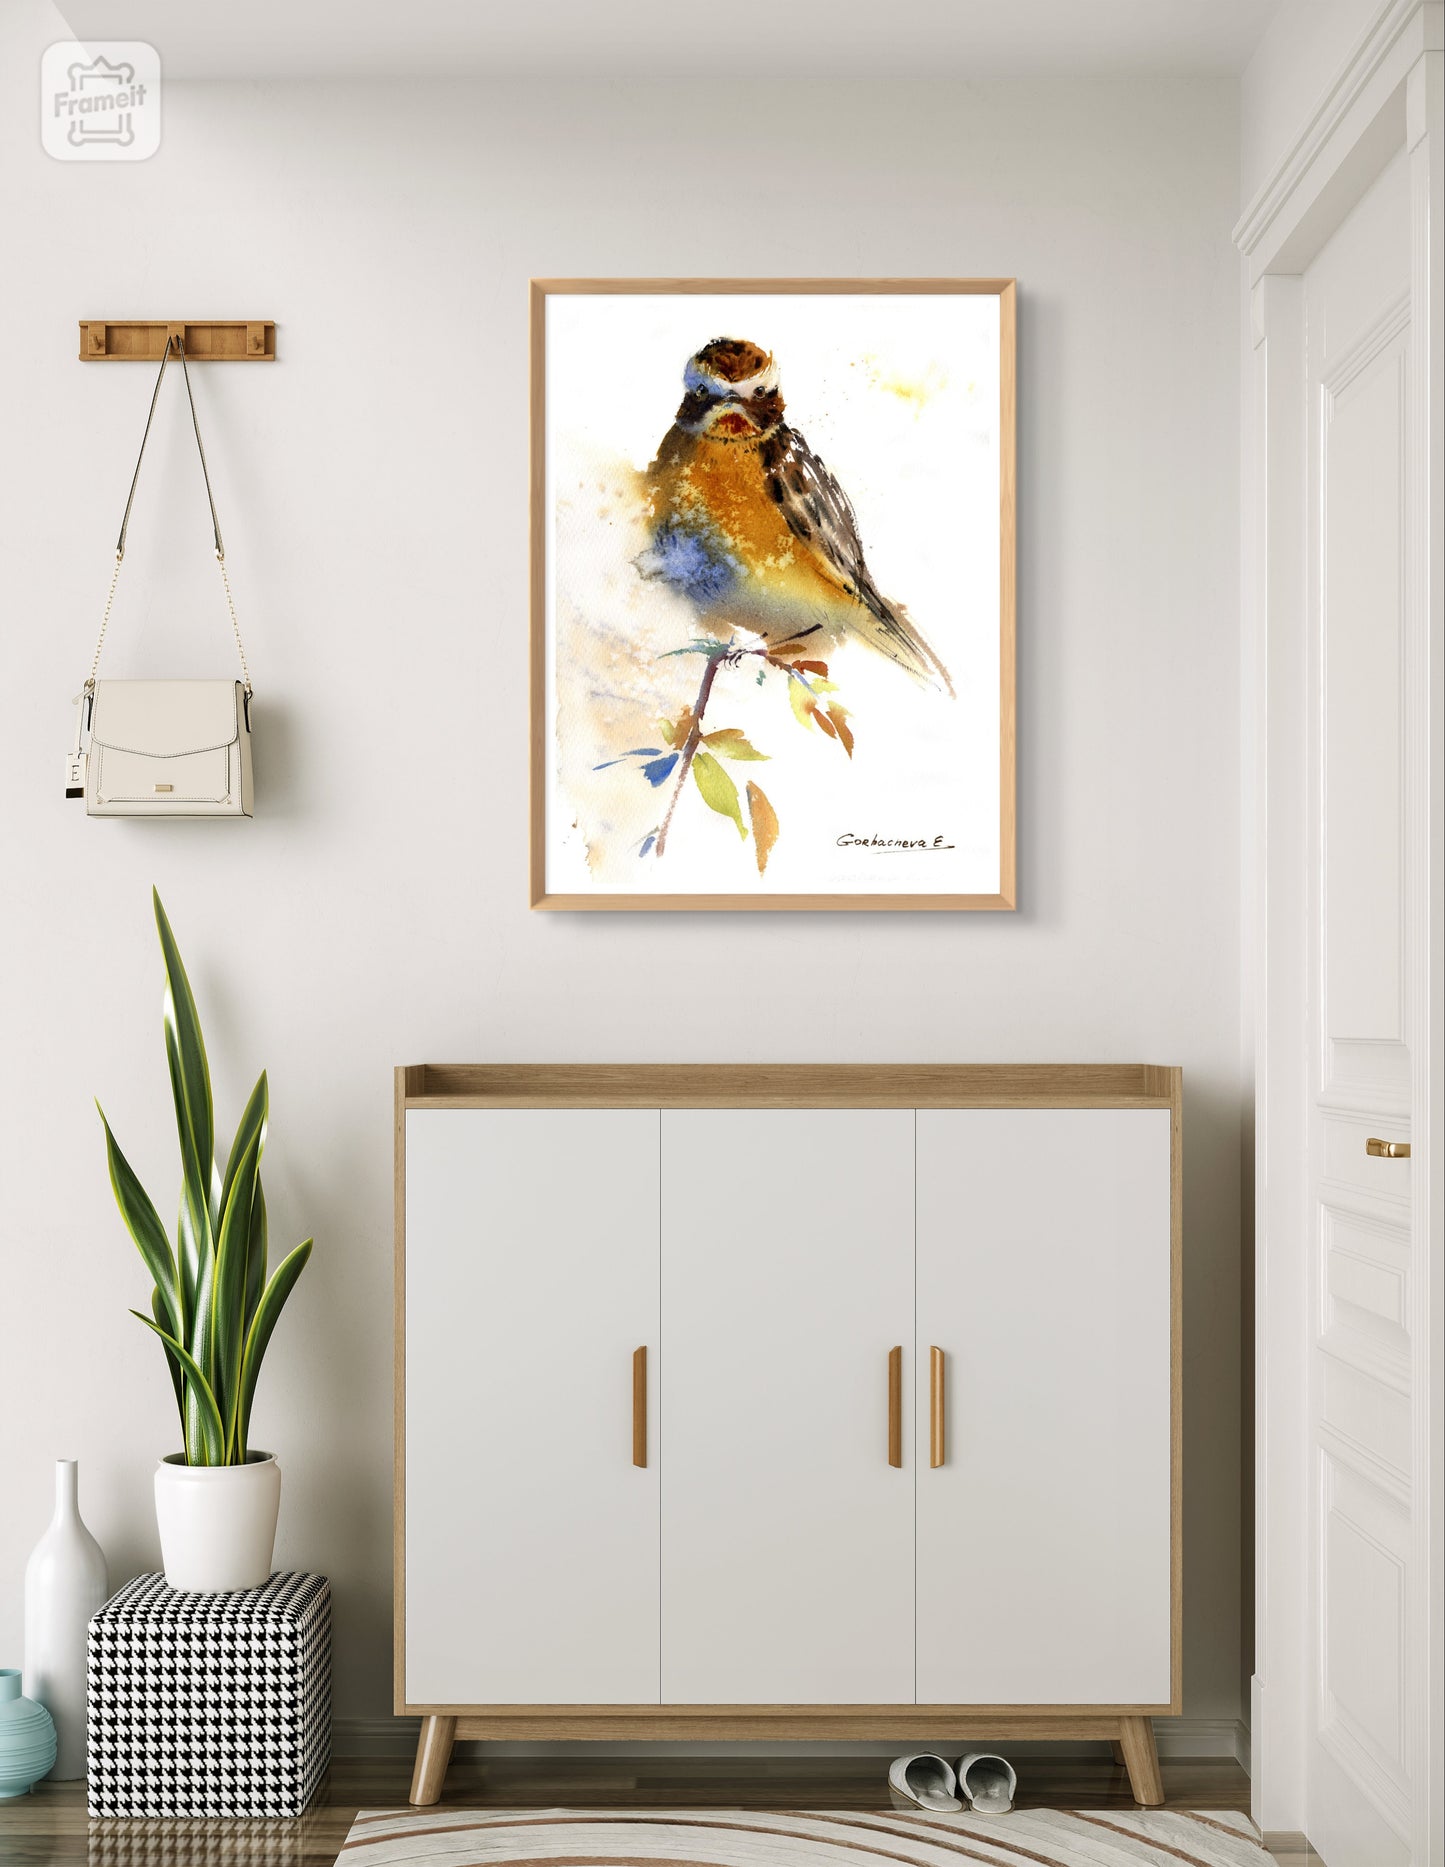 Wild Bird Watercolor Art Print in Ocher Tones - Rustic Home Decor - Canvas Bird Painting Gift